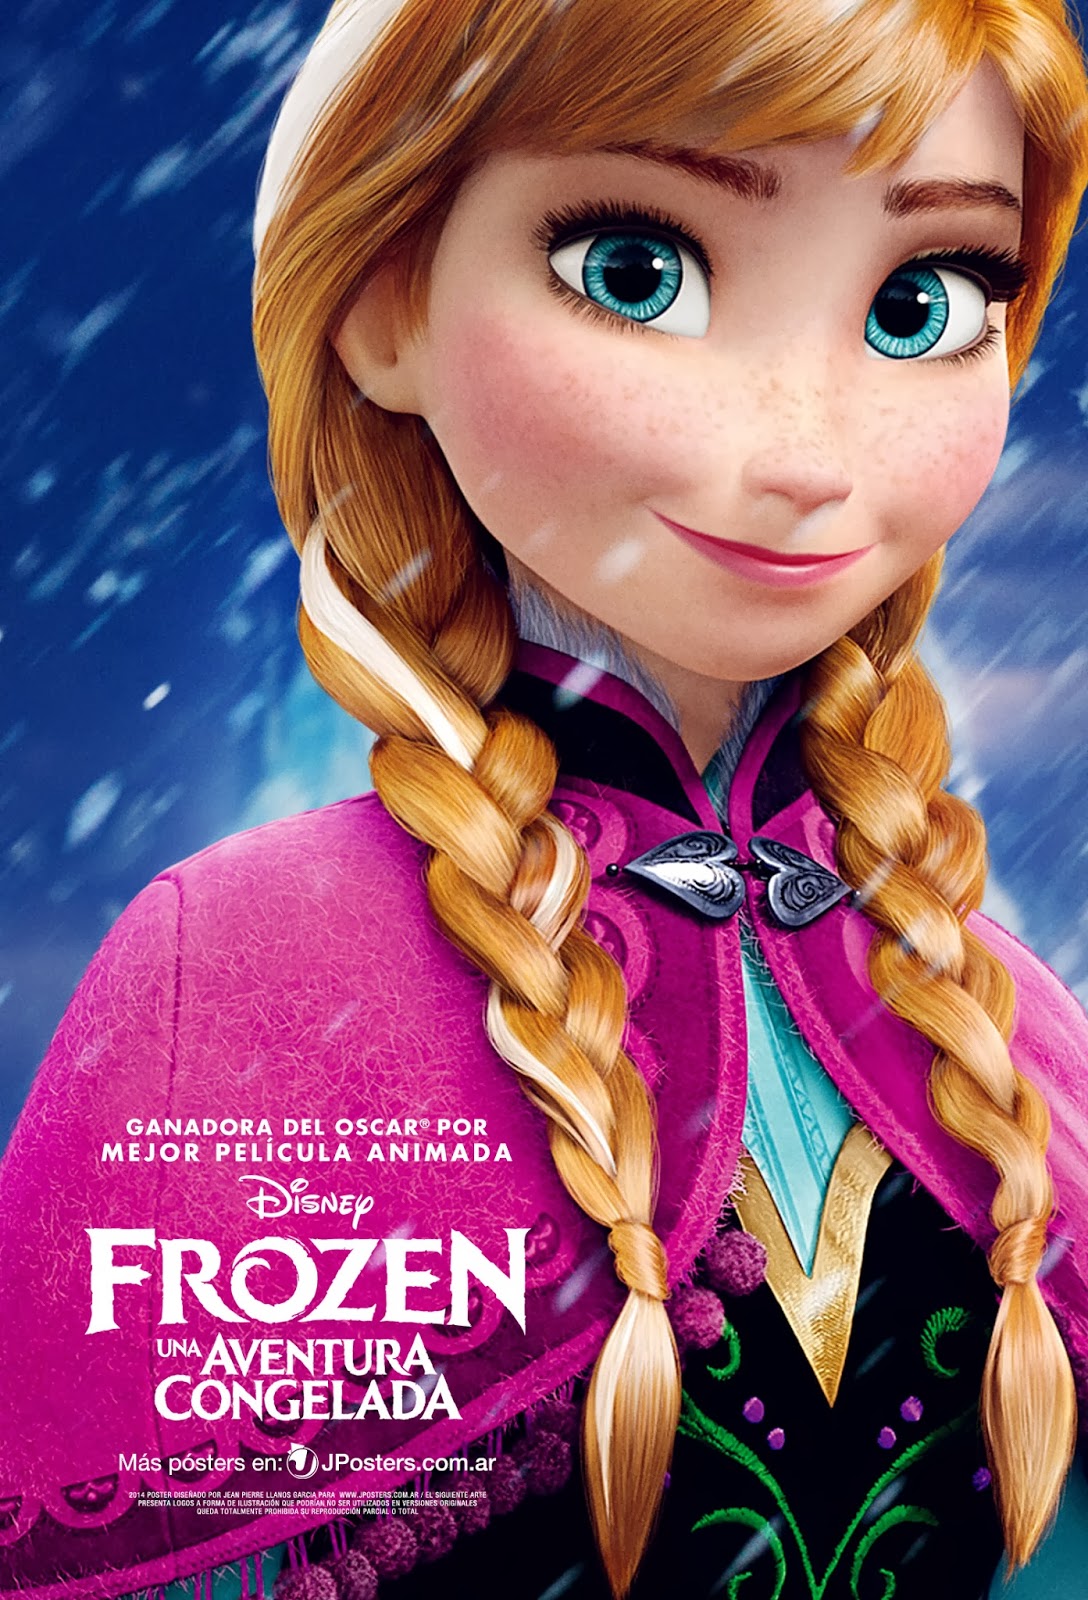 Frozen Anna Poster   Elsa and Anna Photo 36761594   Fanpop